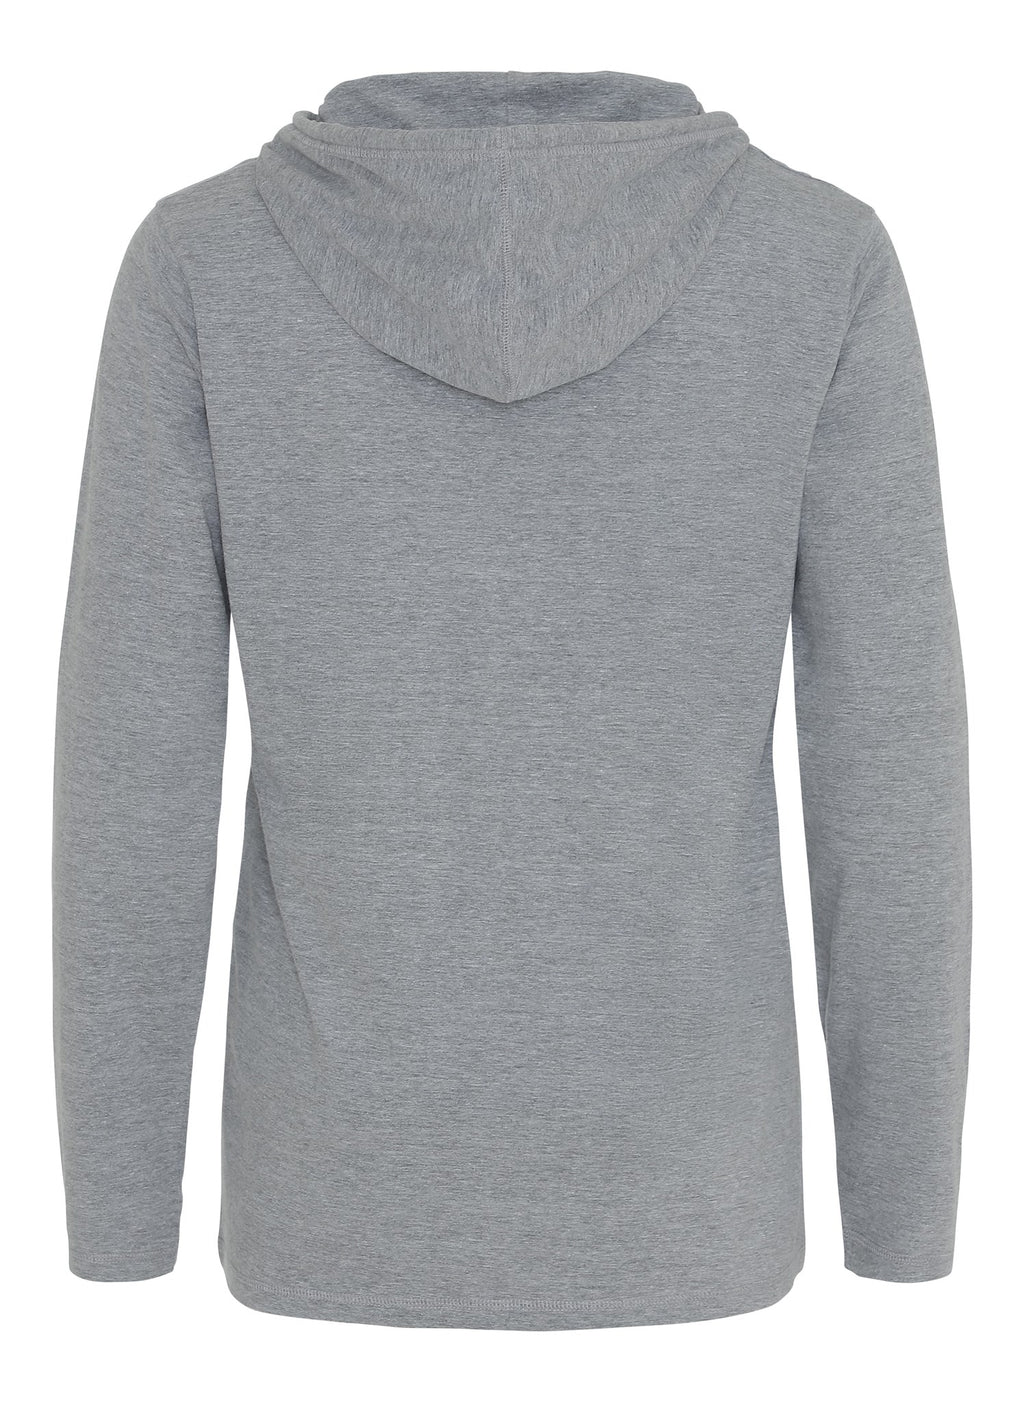 Light hoodie - Light grey